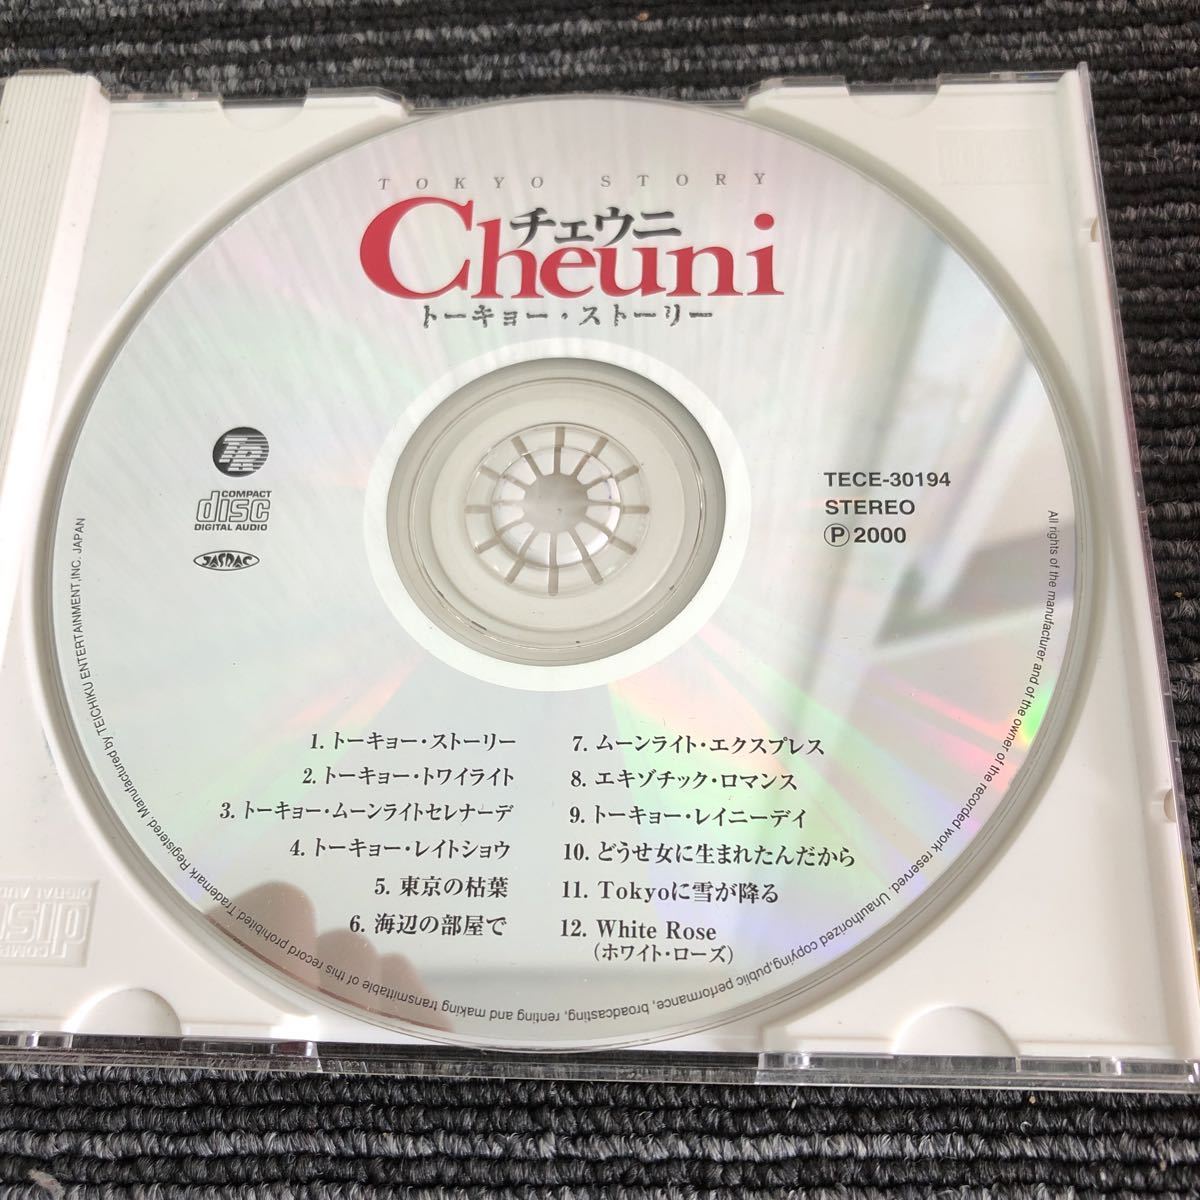 k[.2]CD che морской еж Cheuni альбом to-kyo-* -тактный - Lee музыка 2000 год Junk текущее состояние 